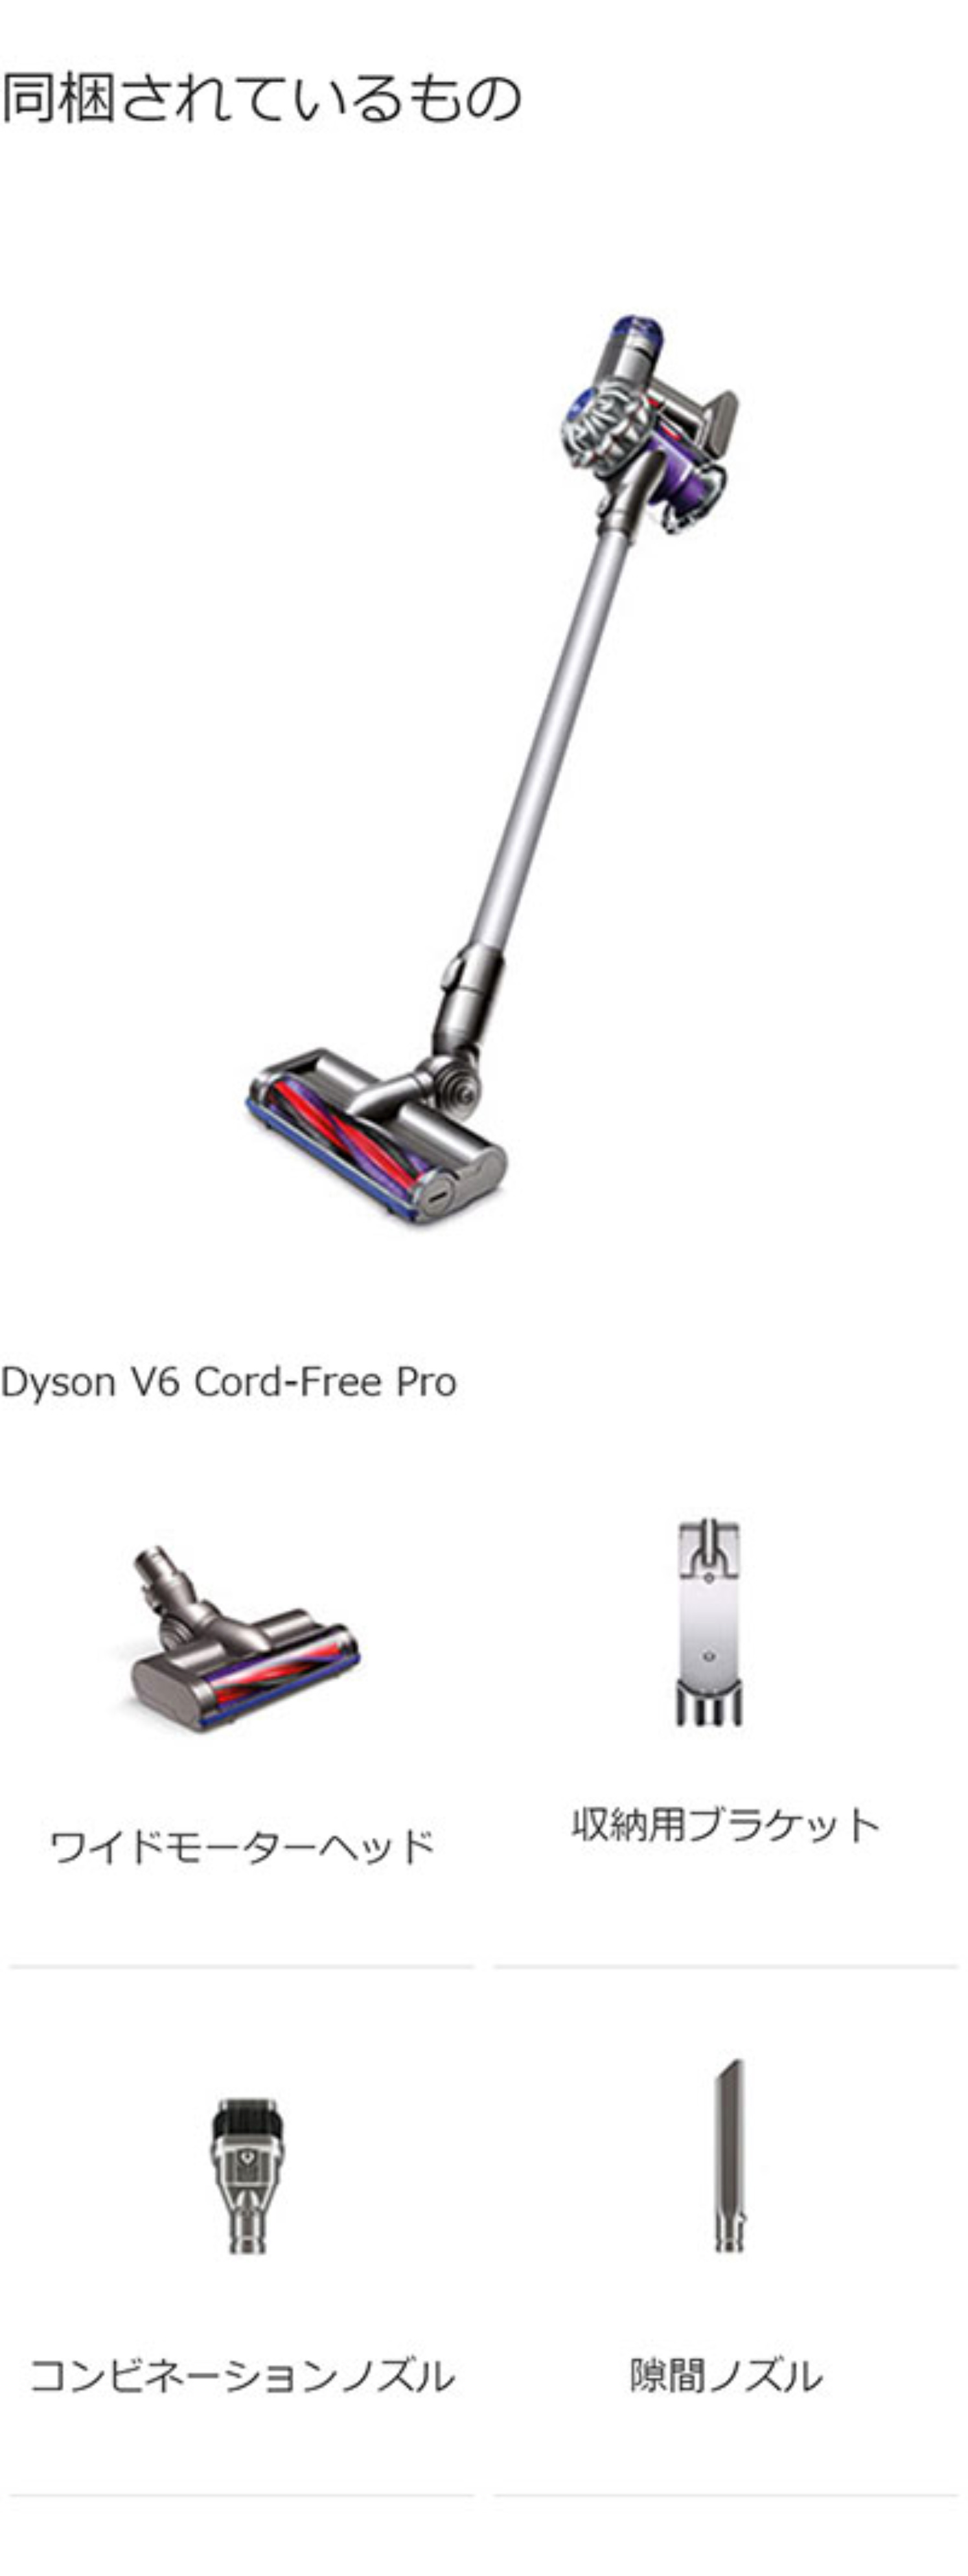 セール ダイソン Dyson V6 Cord-Free Pro サイクロン式 コードレス掃除